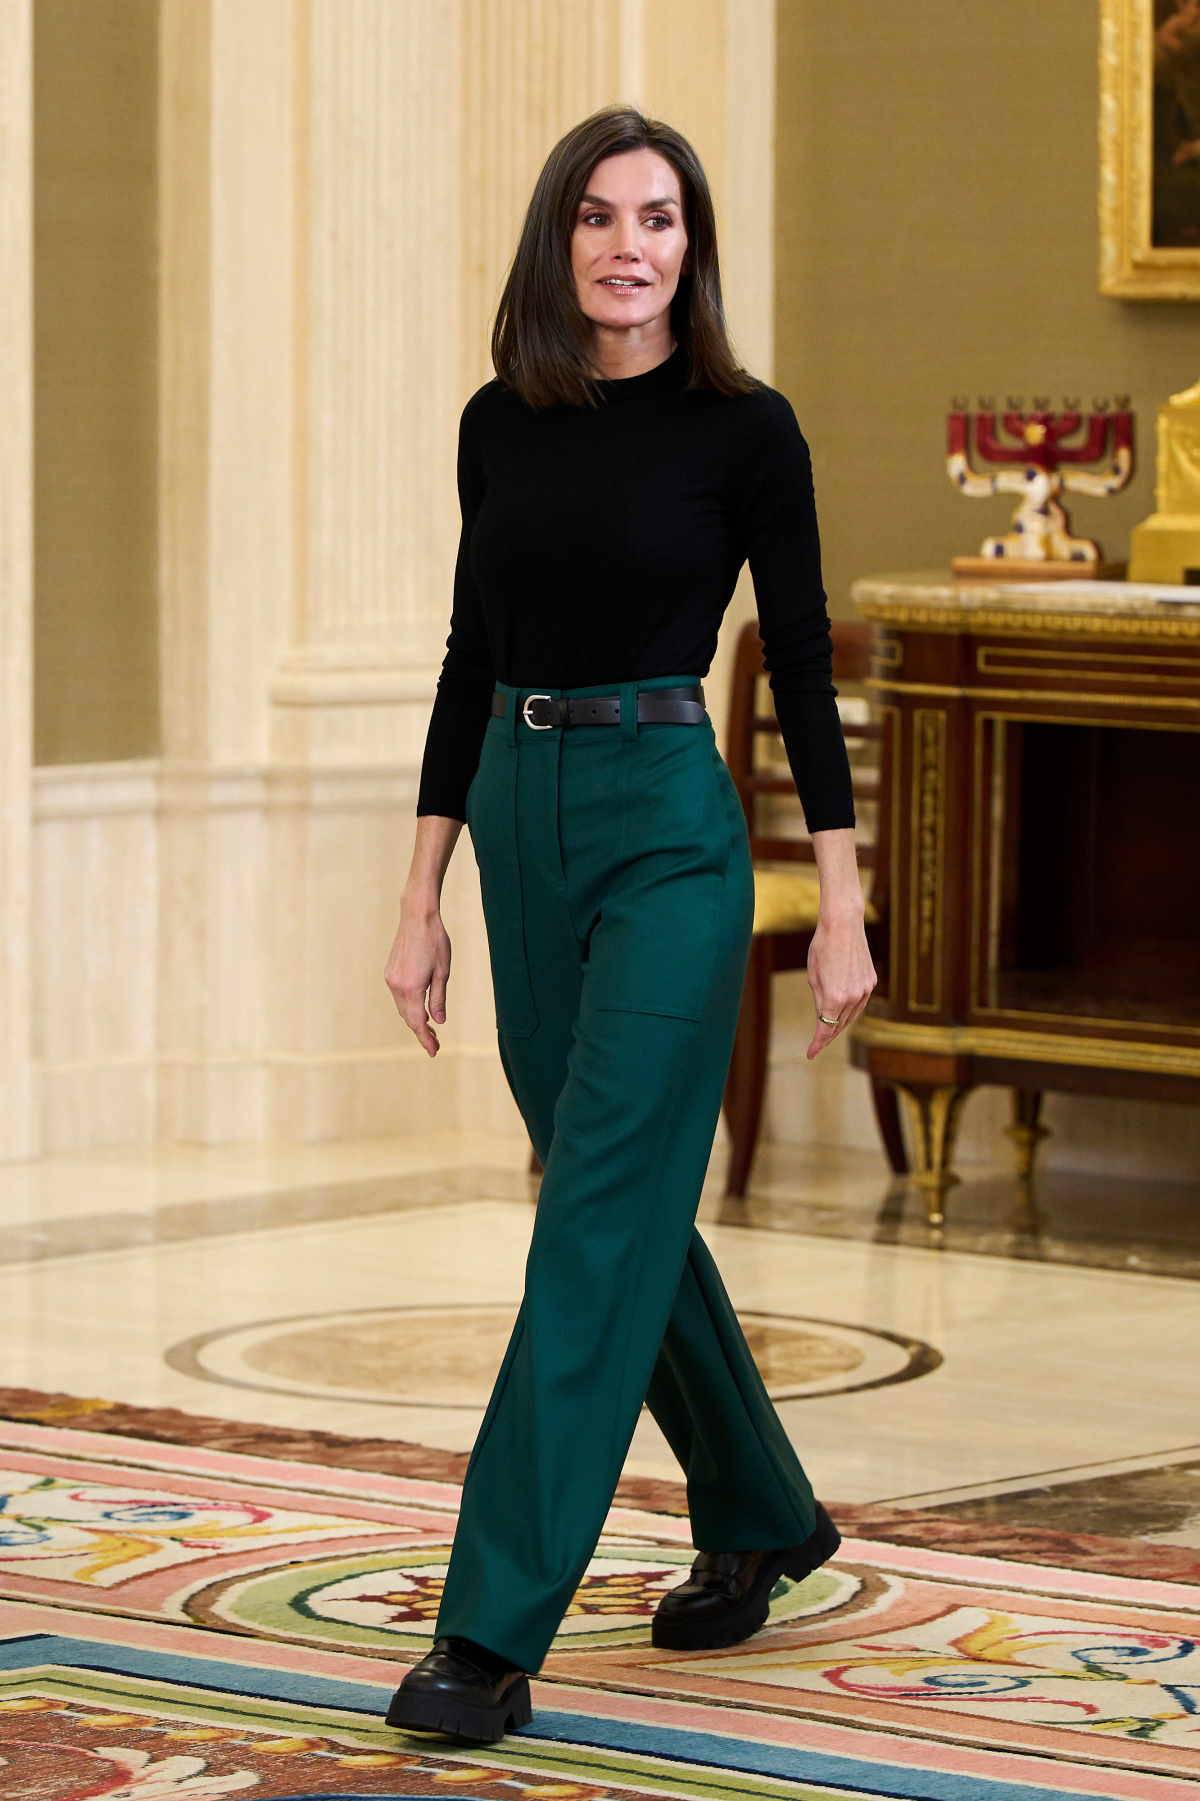 Królowa Letycja po zmianie fryzury zmienia styl. Zielone spodnie z bardzo wysokim stanem marki Boss zestawiła z ciężkimi czarnymi butami Boss.